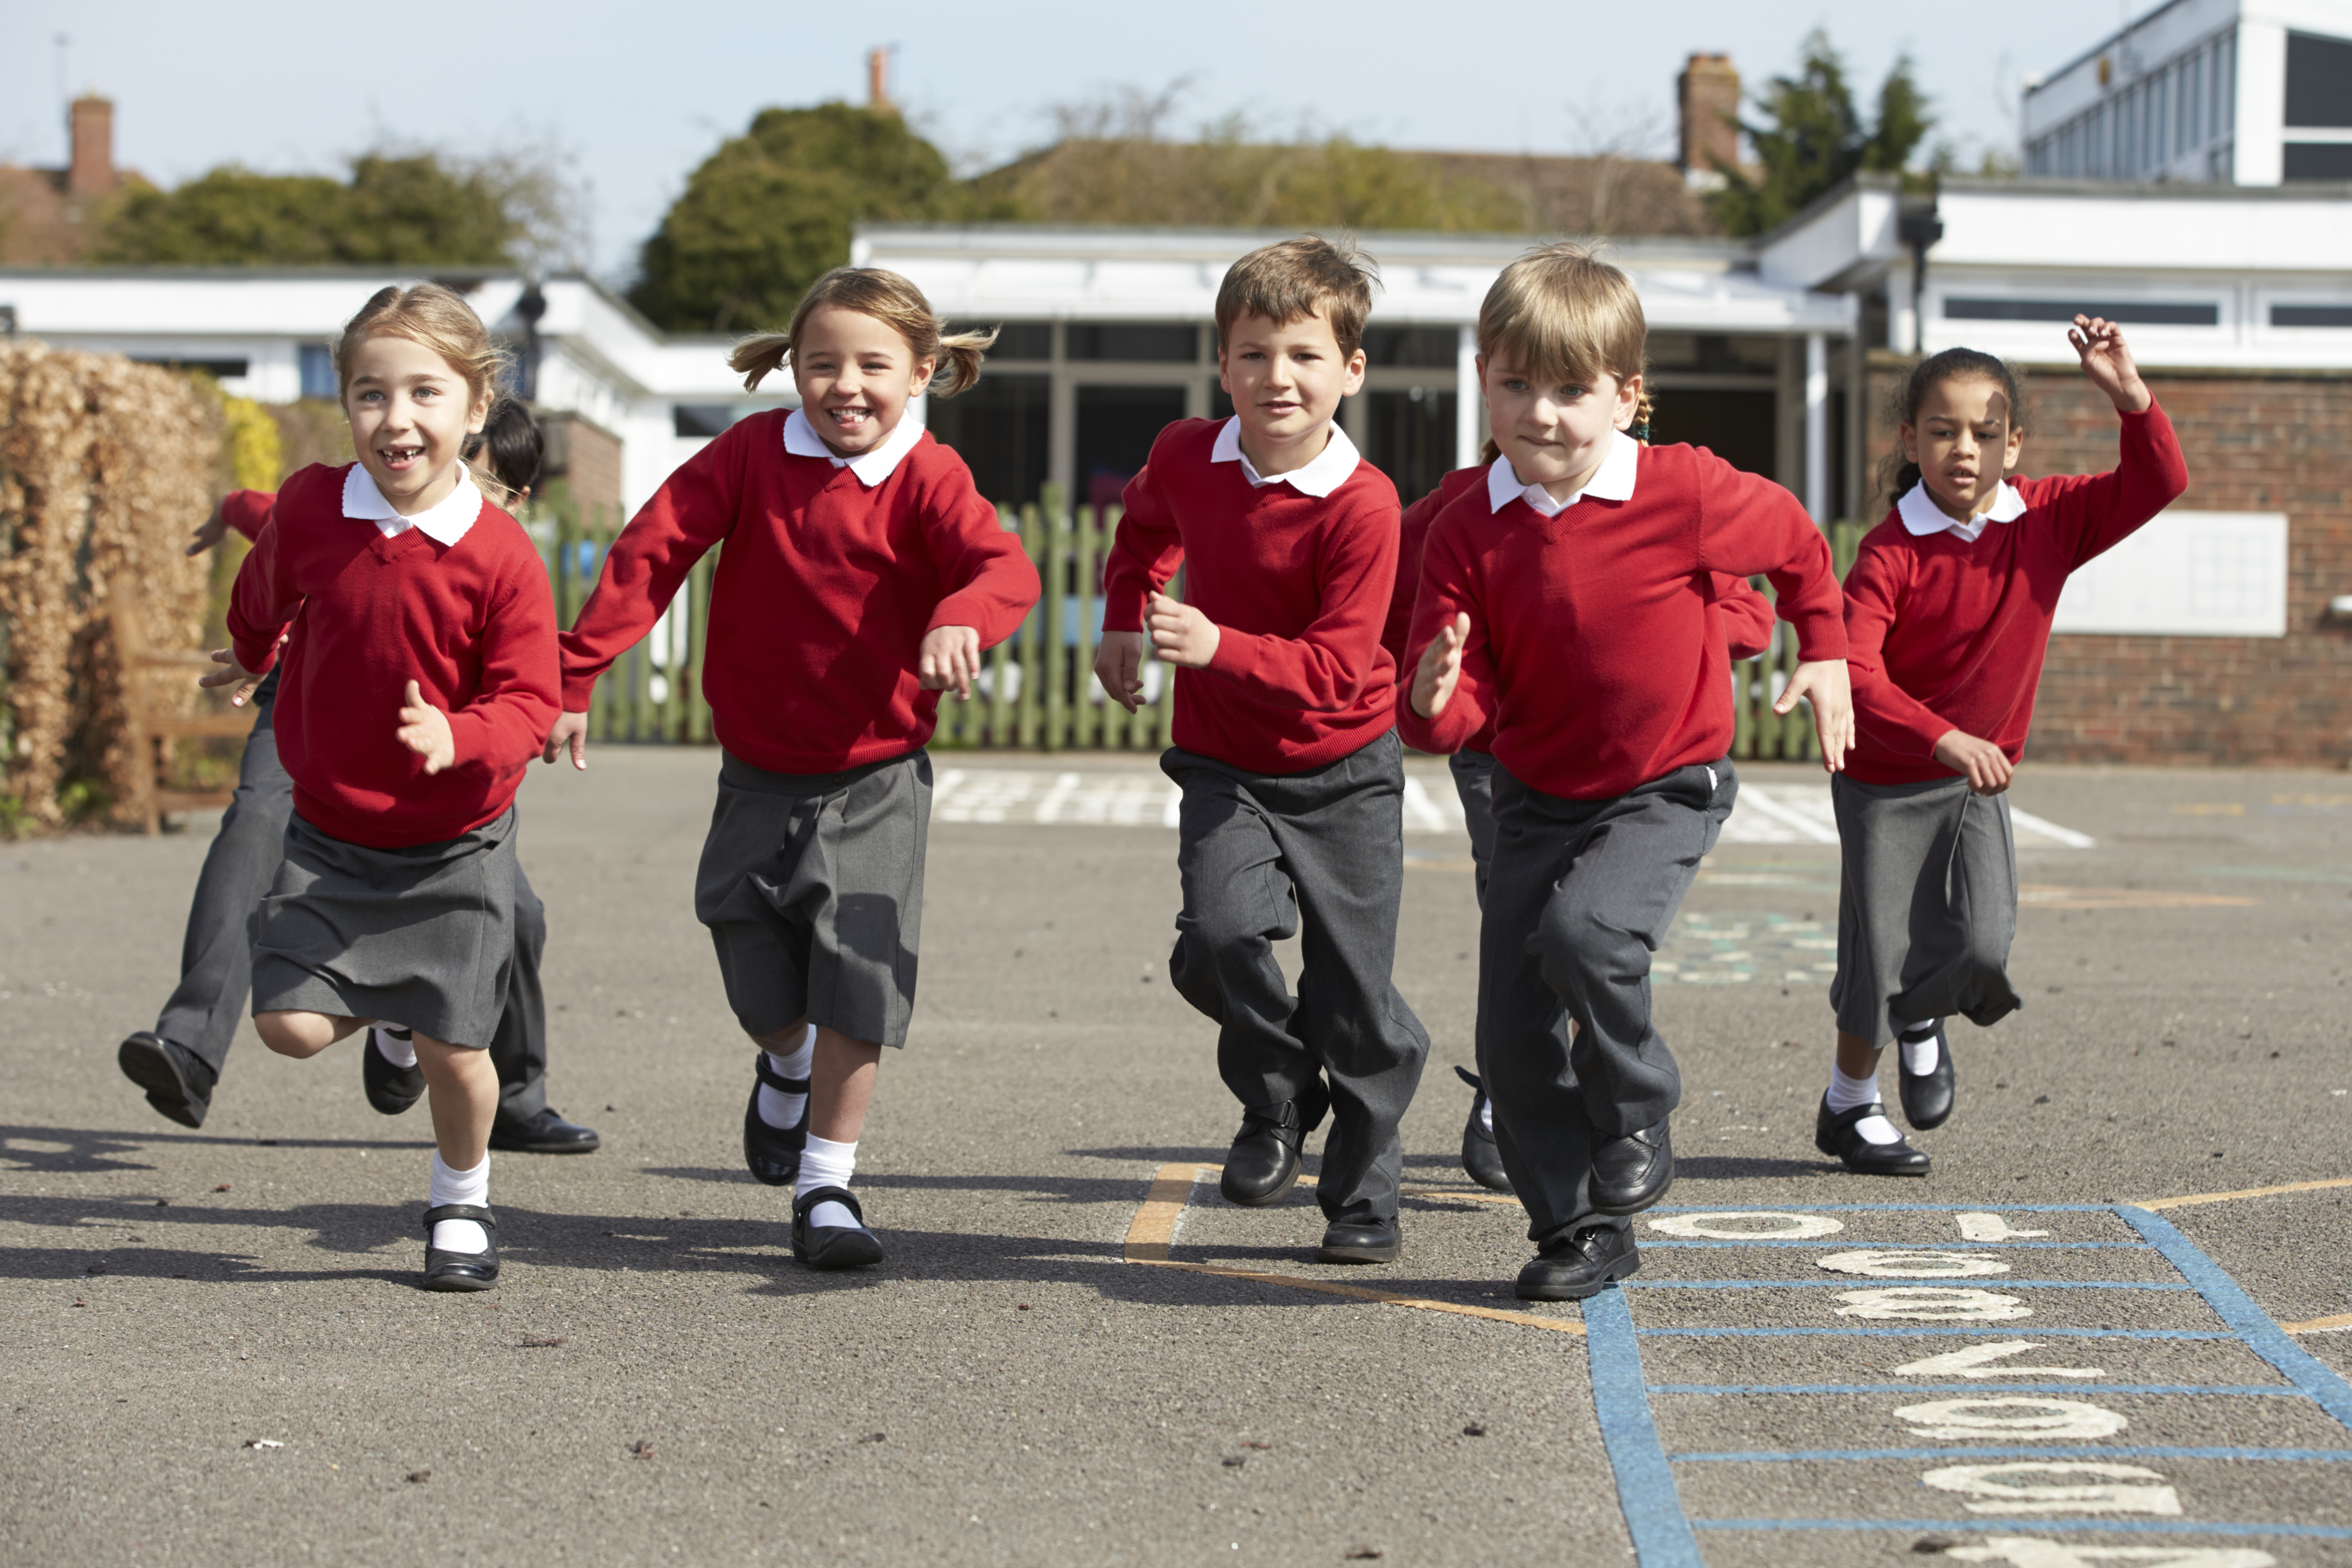 young children in school uniform running